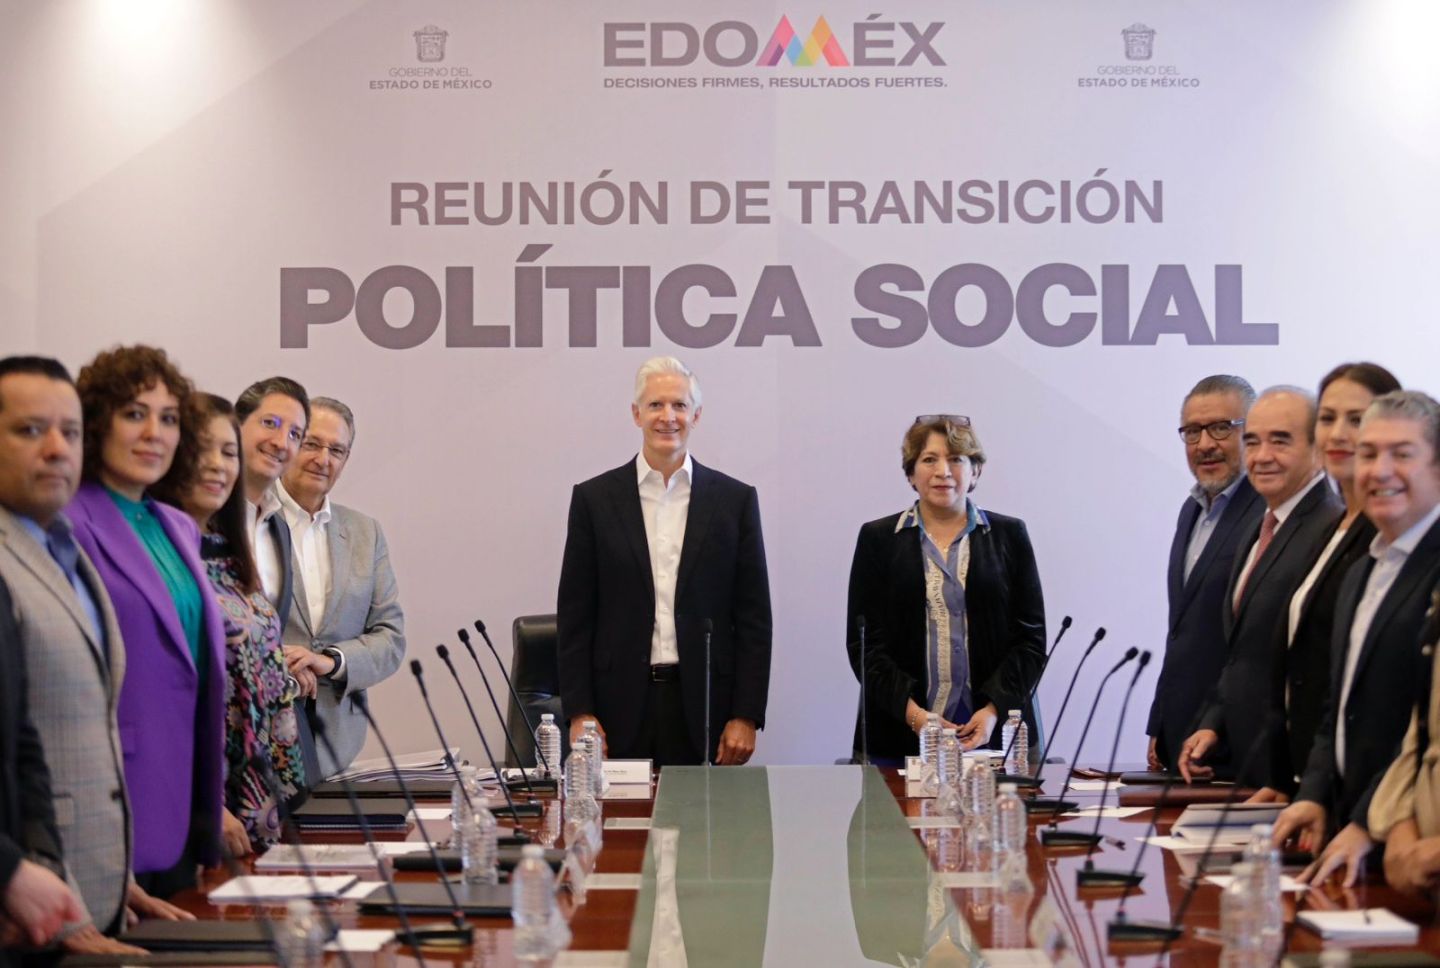 DIALOGAN SOBRE POLÍTICA SOCIAL EN LA SEXTA REUNIÓN DE TRANSICIÓN